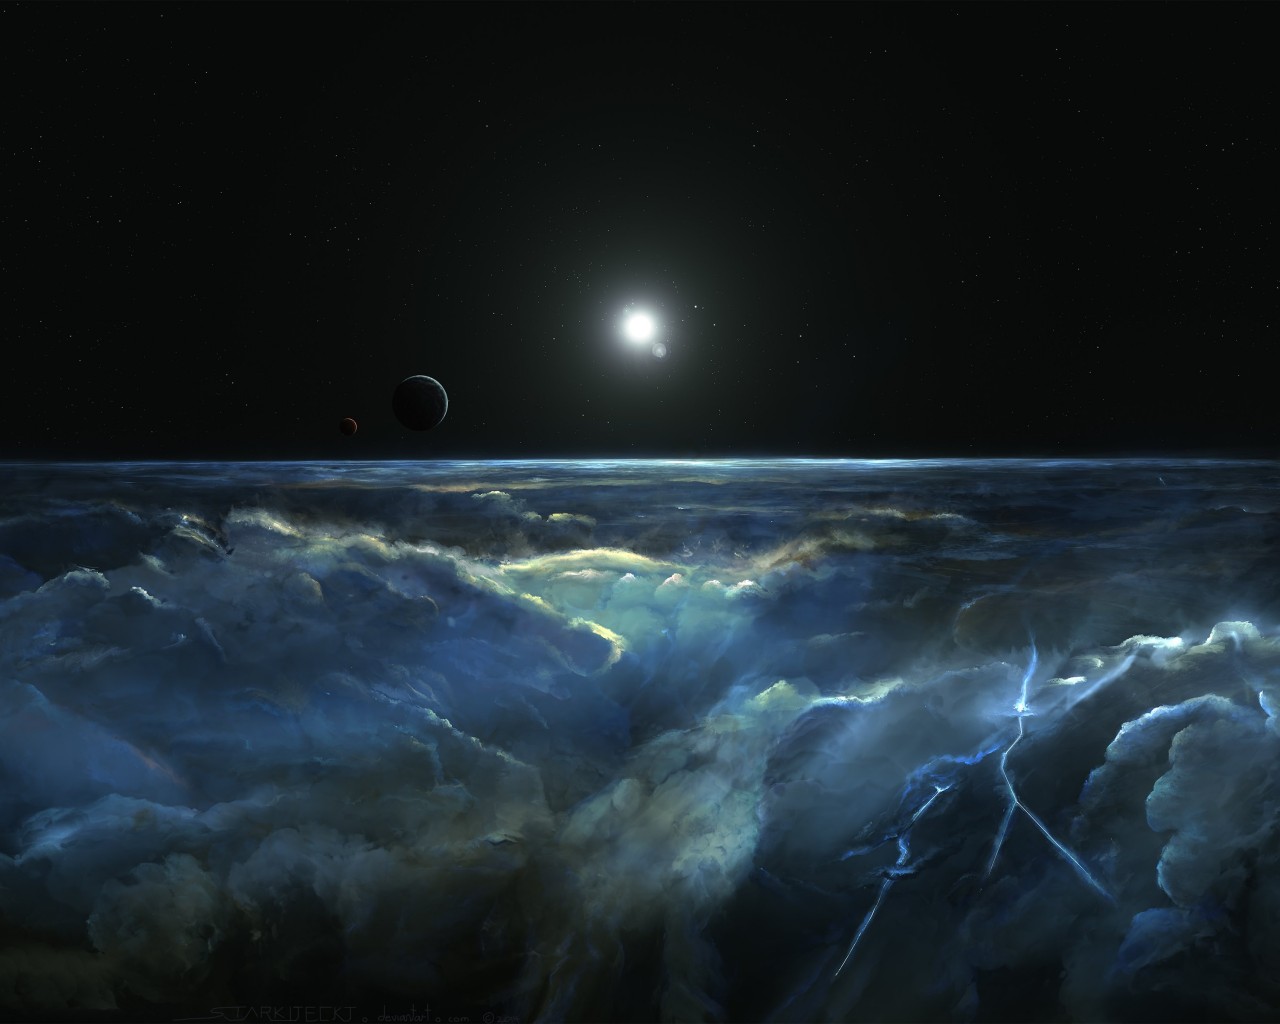 Stormy Atmosphere of Merphlyn Wallpaper for Desktop 1280x1024